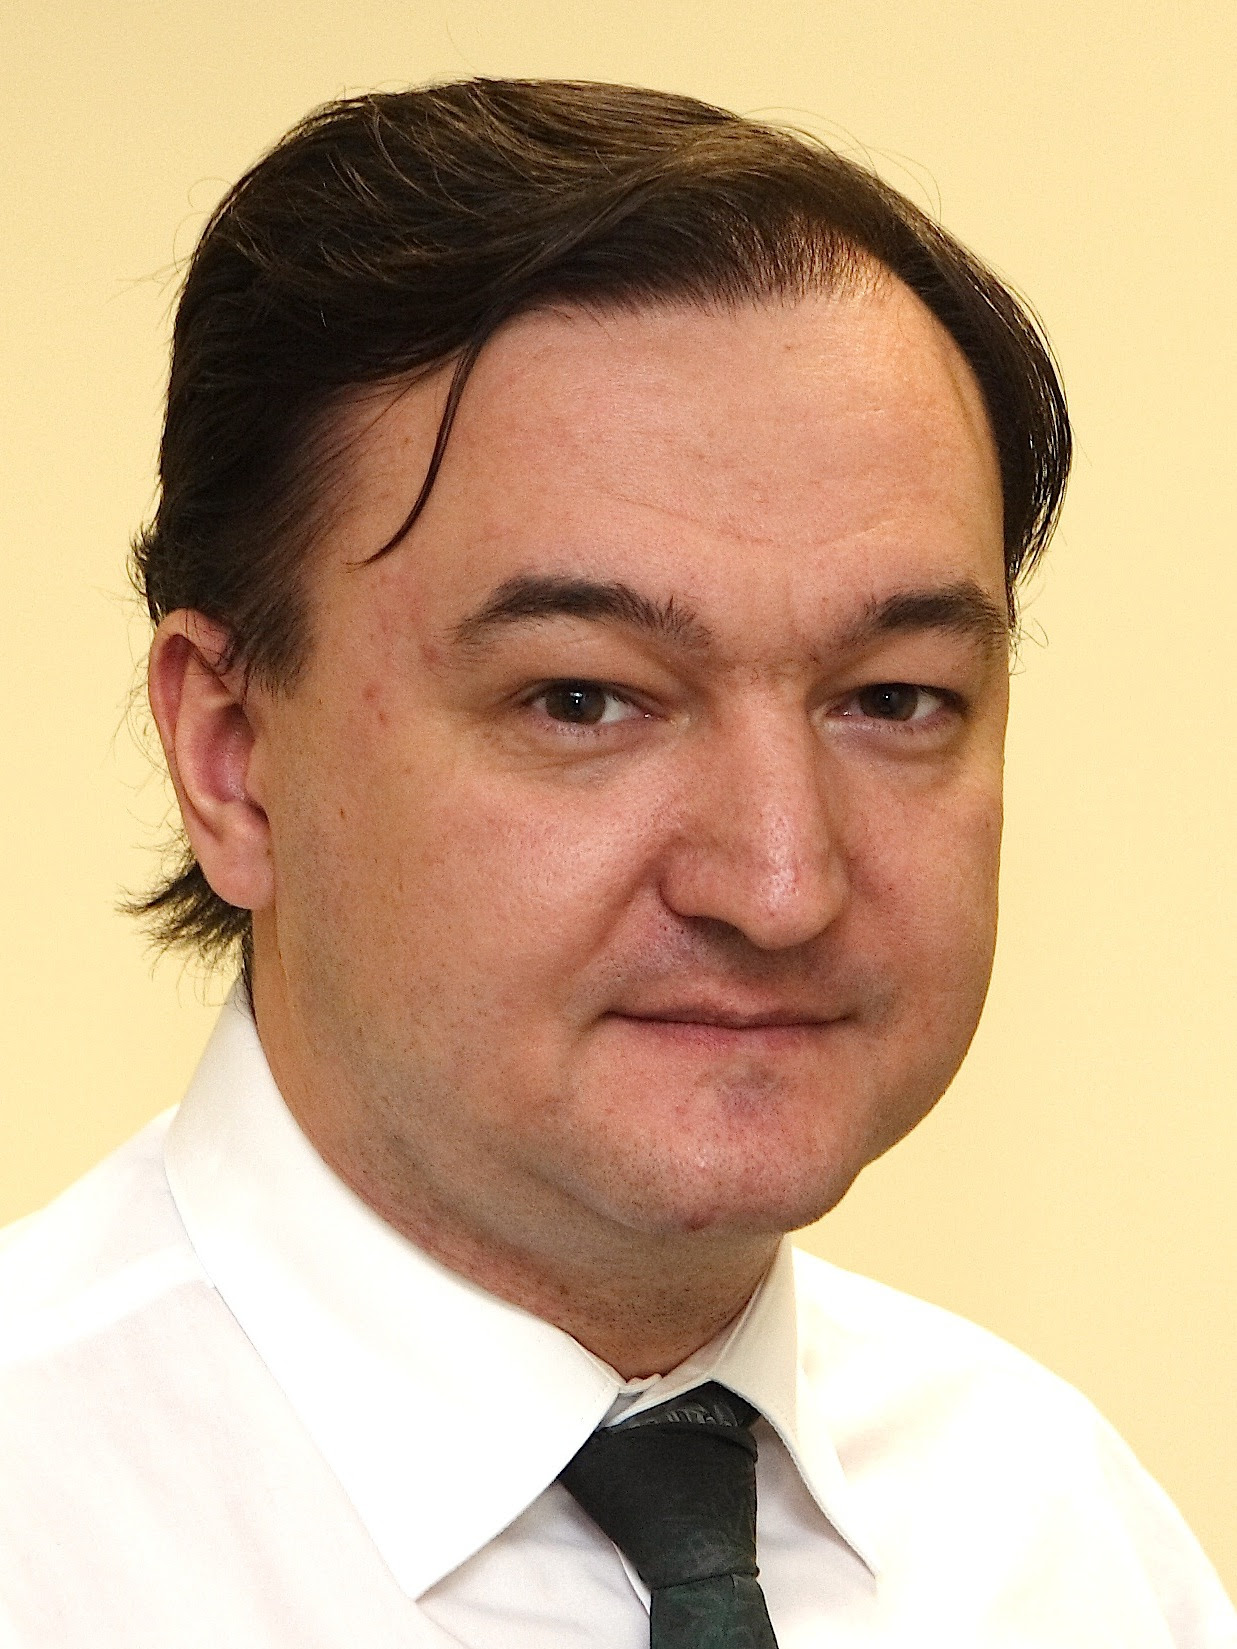 Sergei Magnitsky - Wikipedia